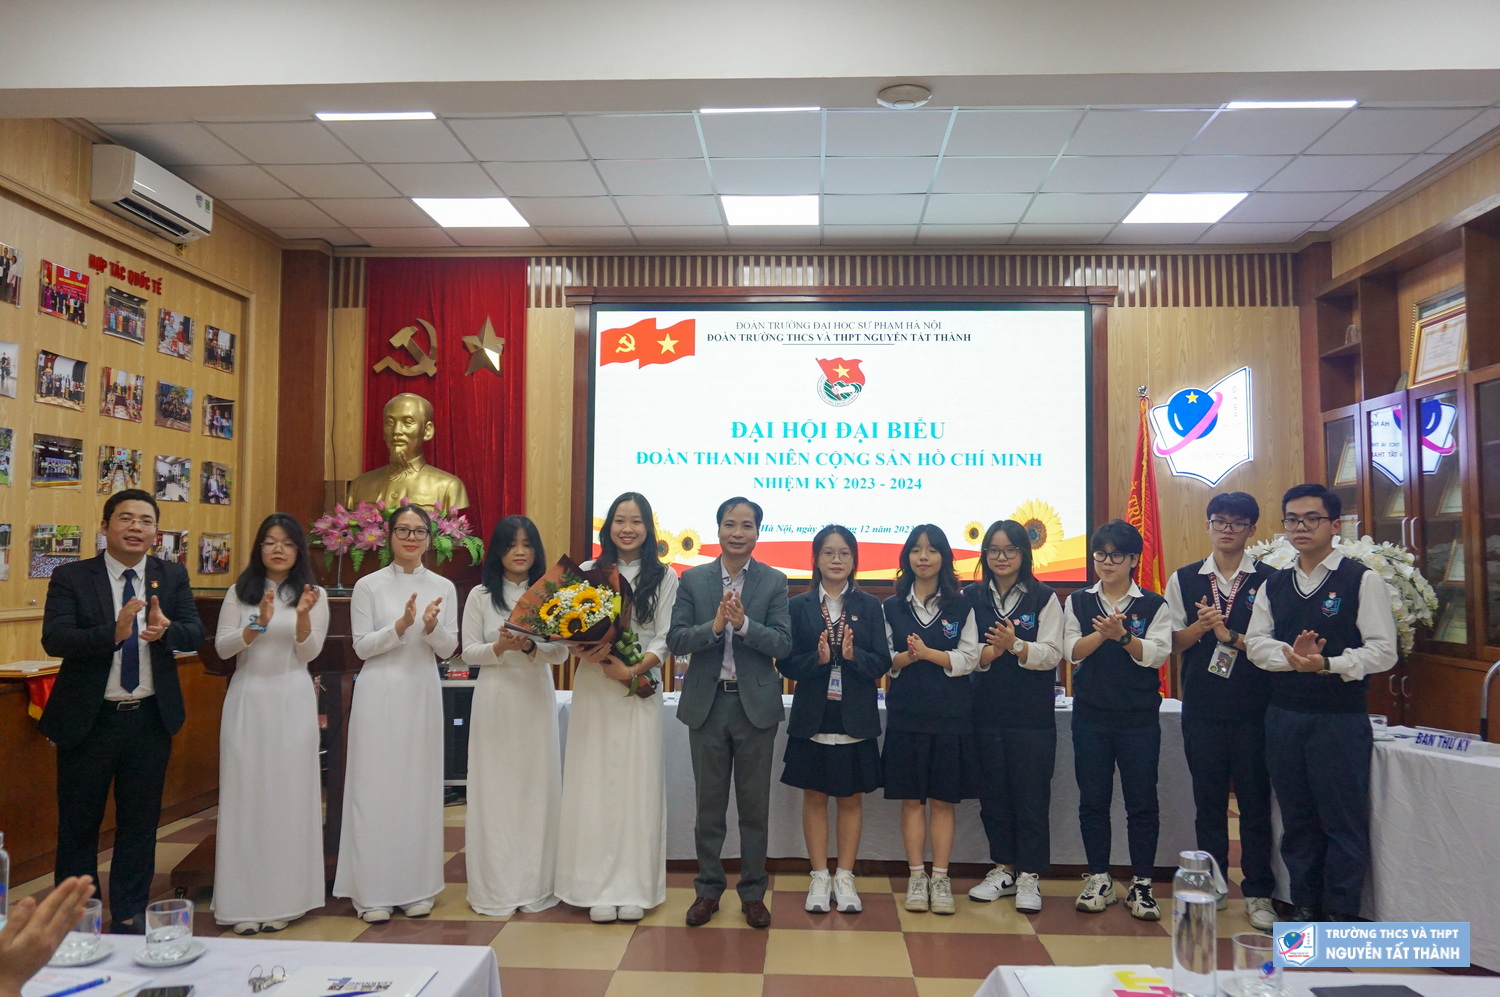 Đại hội Đại biểu Đoàn TNCS Hồ Chí Minh nhiệm kì 2023-2024: Tiếp bước thành công lớn